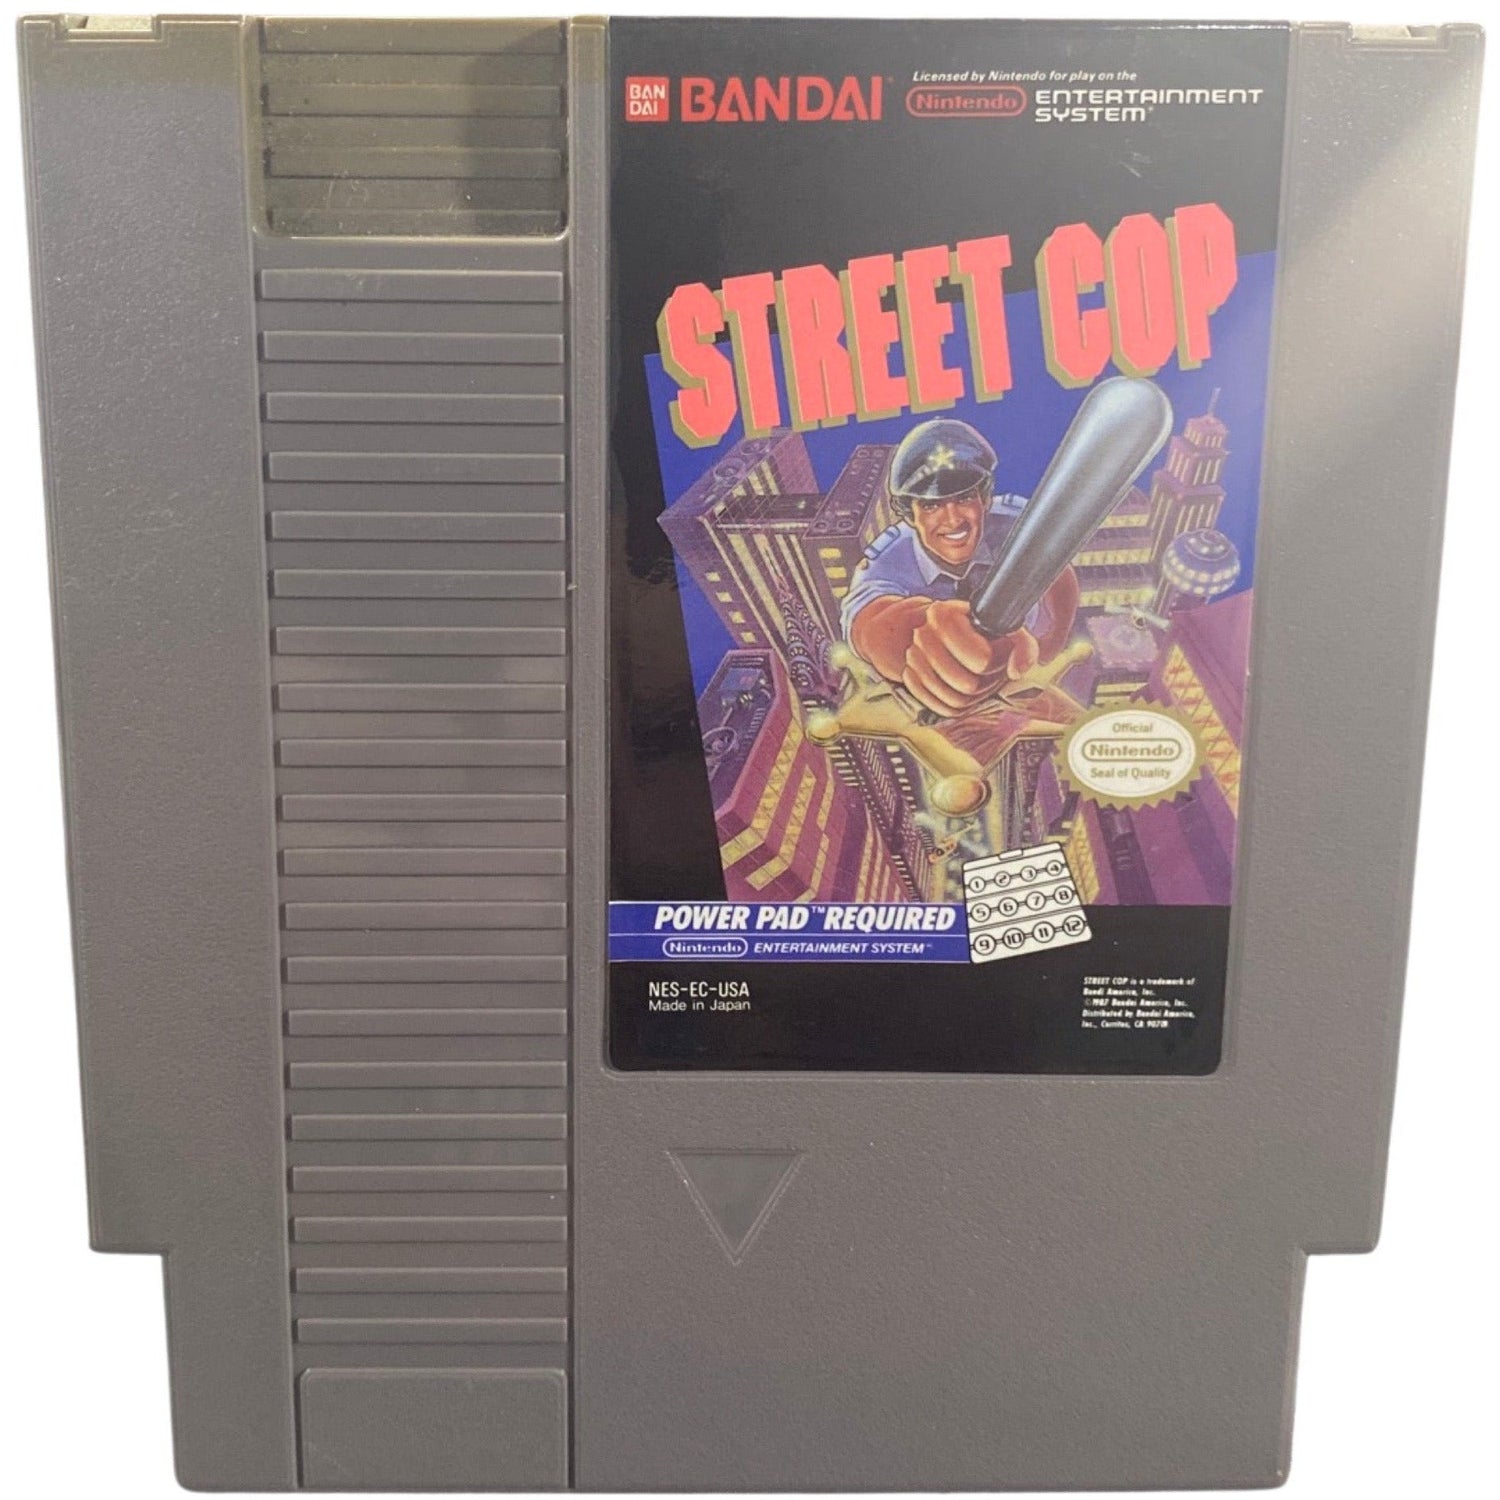 Actual cartridge view of Street Cop - NES